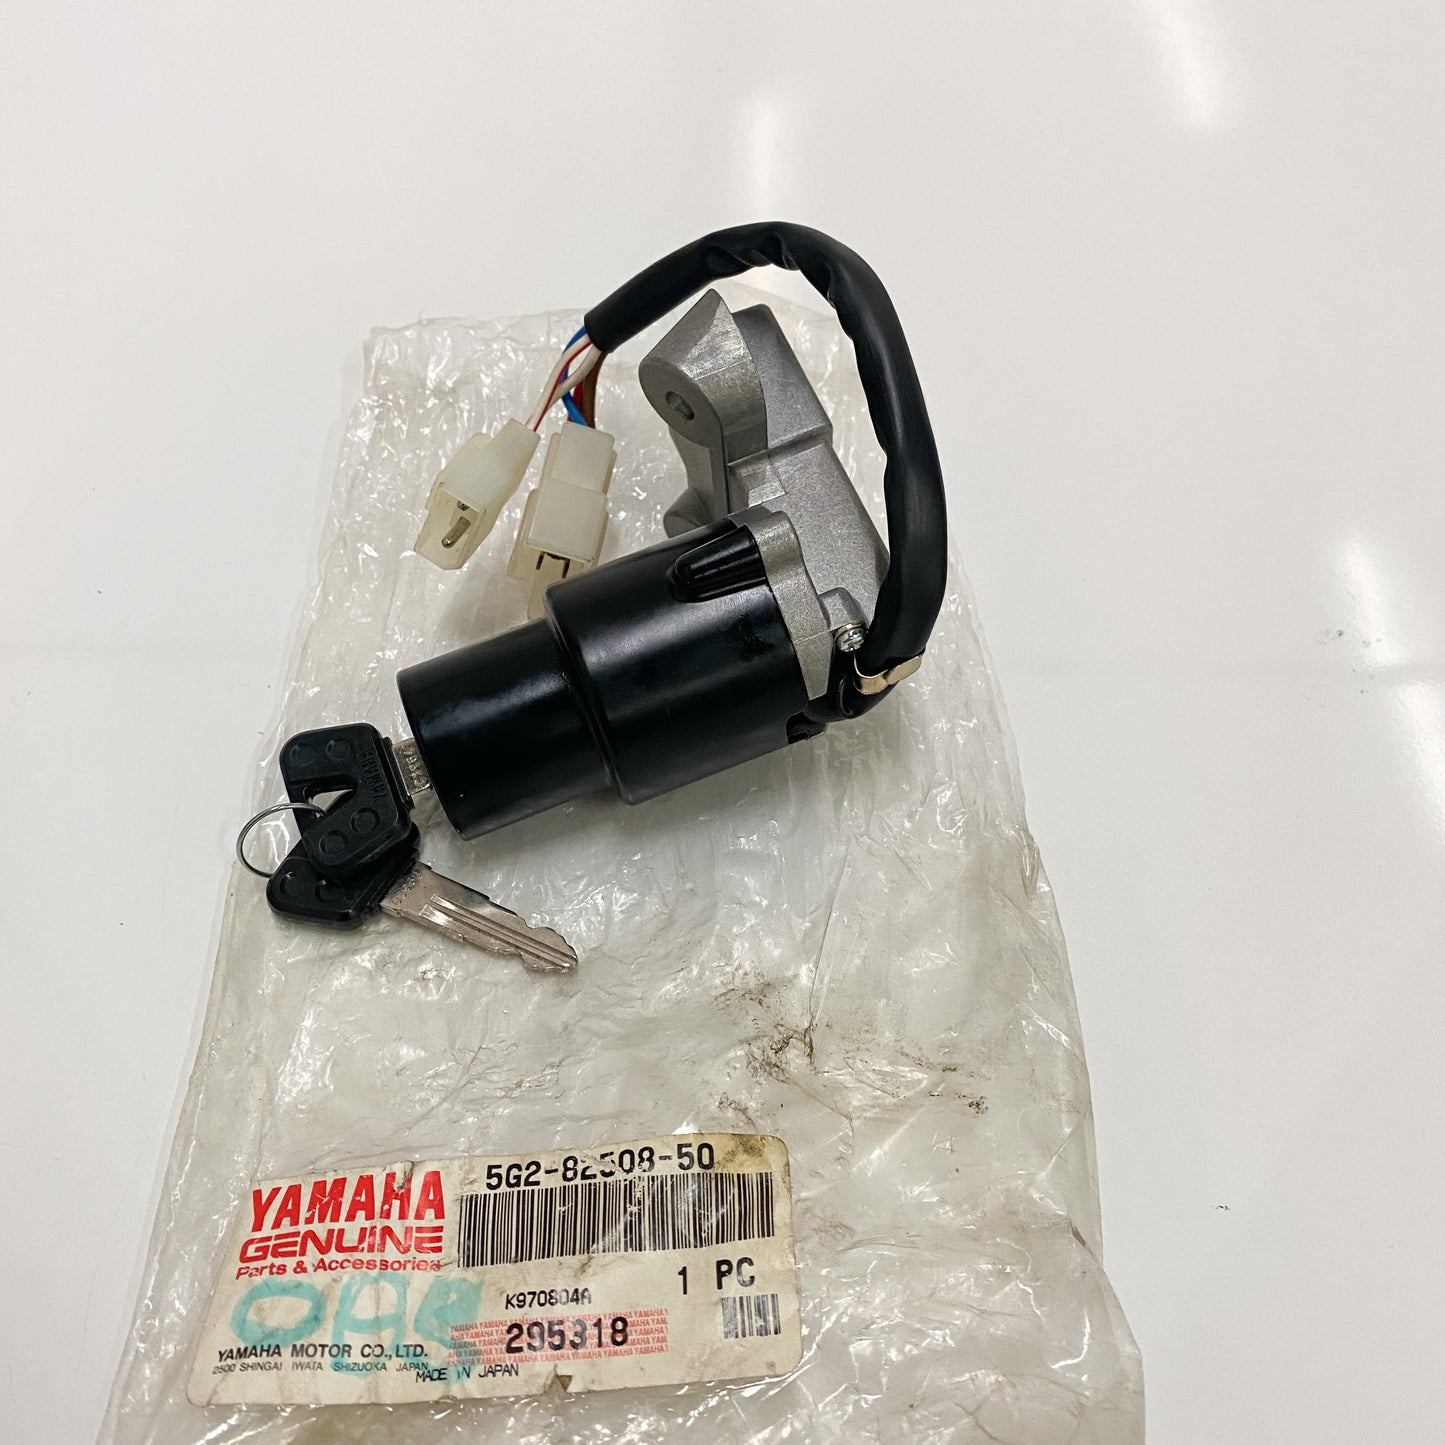 Yamaha Main Switch Assembly 5G2-82508-50-00